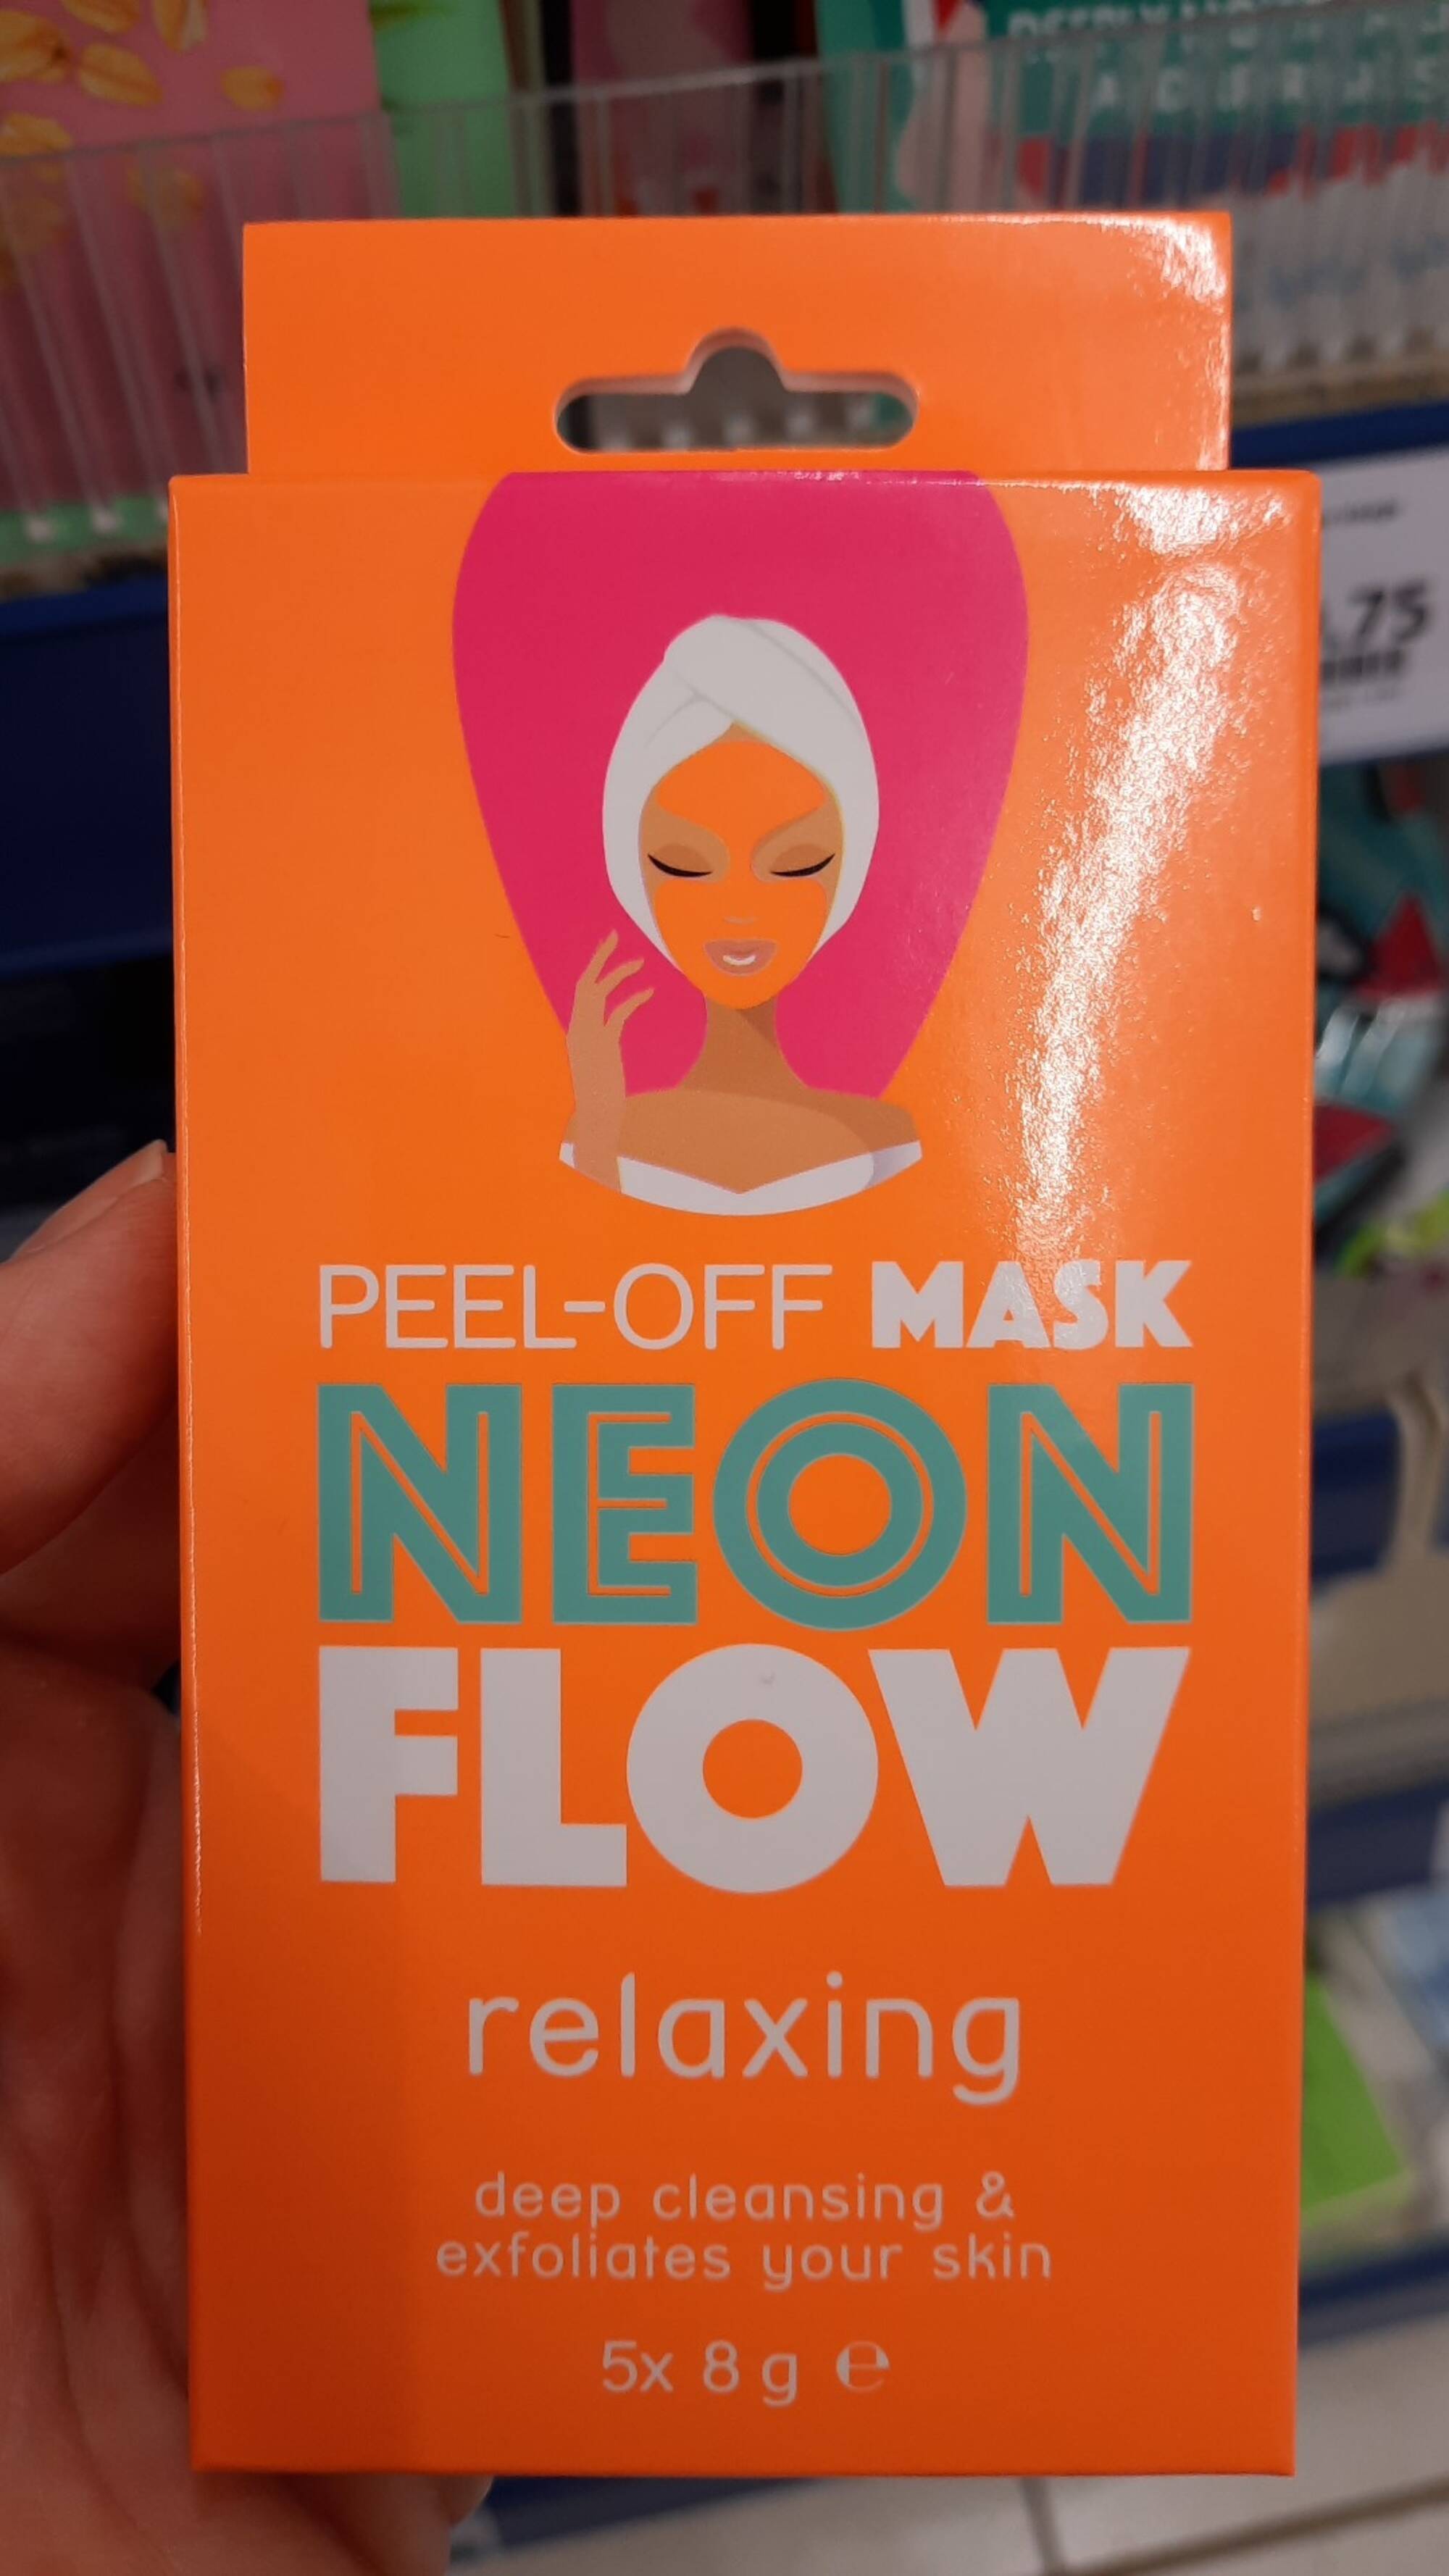 NEON FLOW - Peel-off Mask relaxing